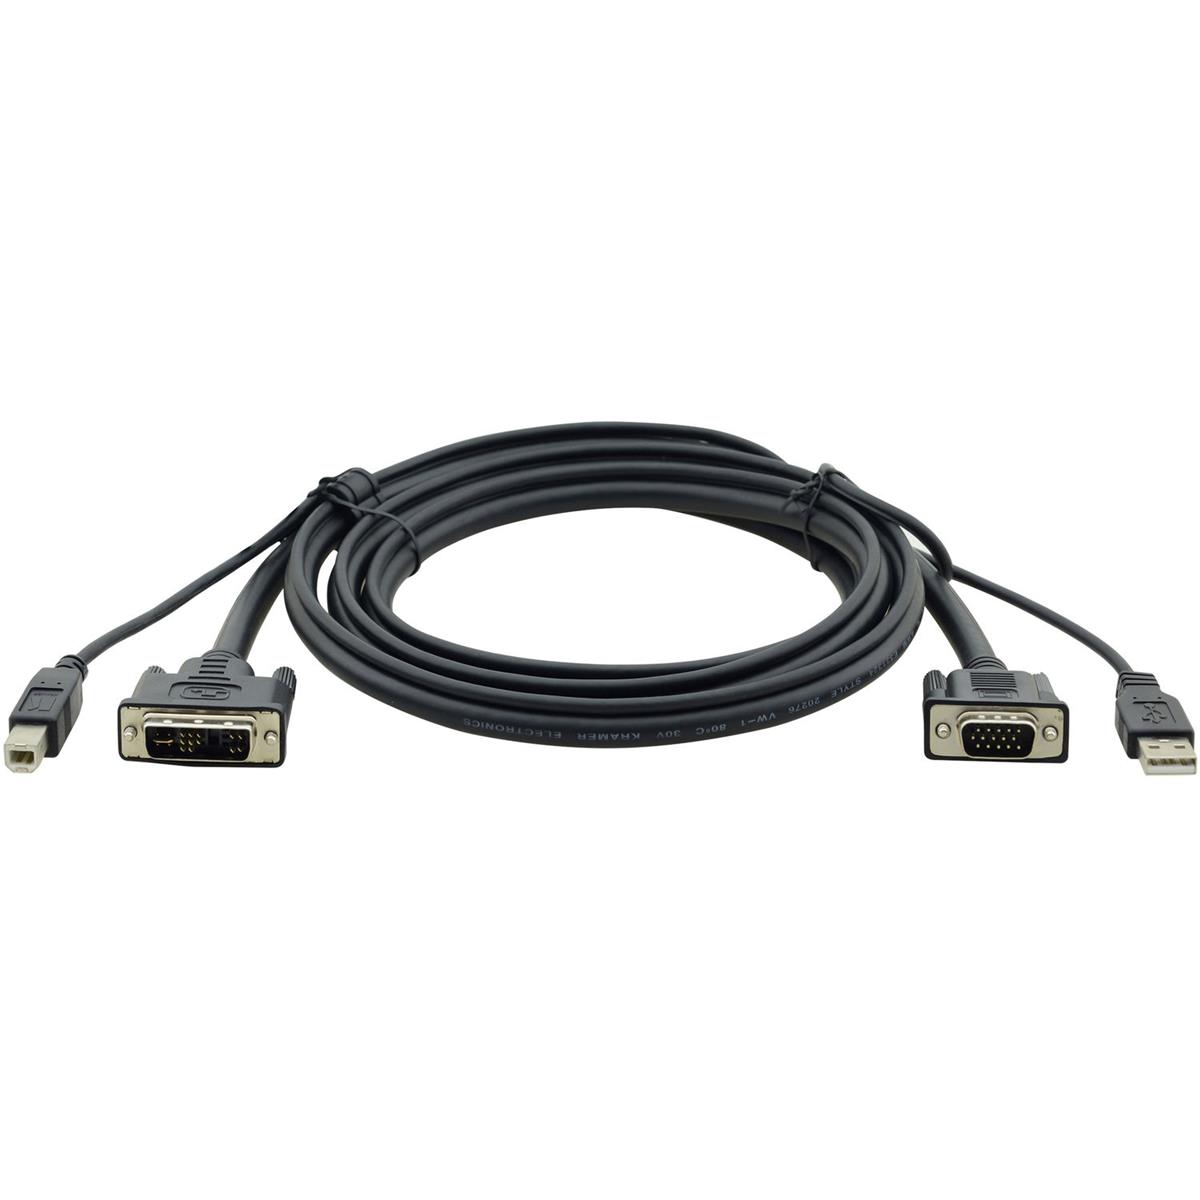 

Kramer Electronics 6' VGA to DVI-A and USB (A-B) KVM Cable